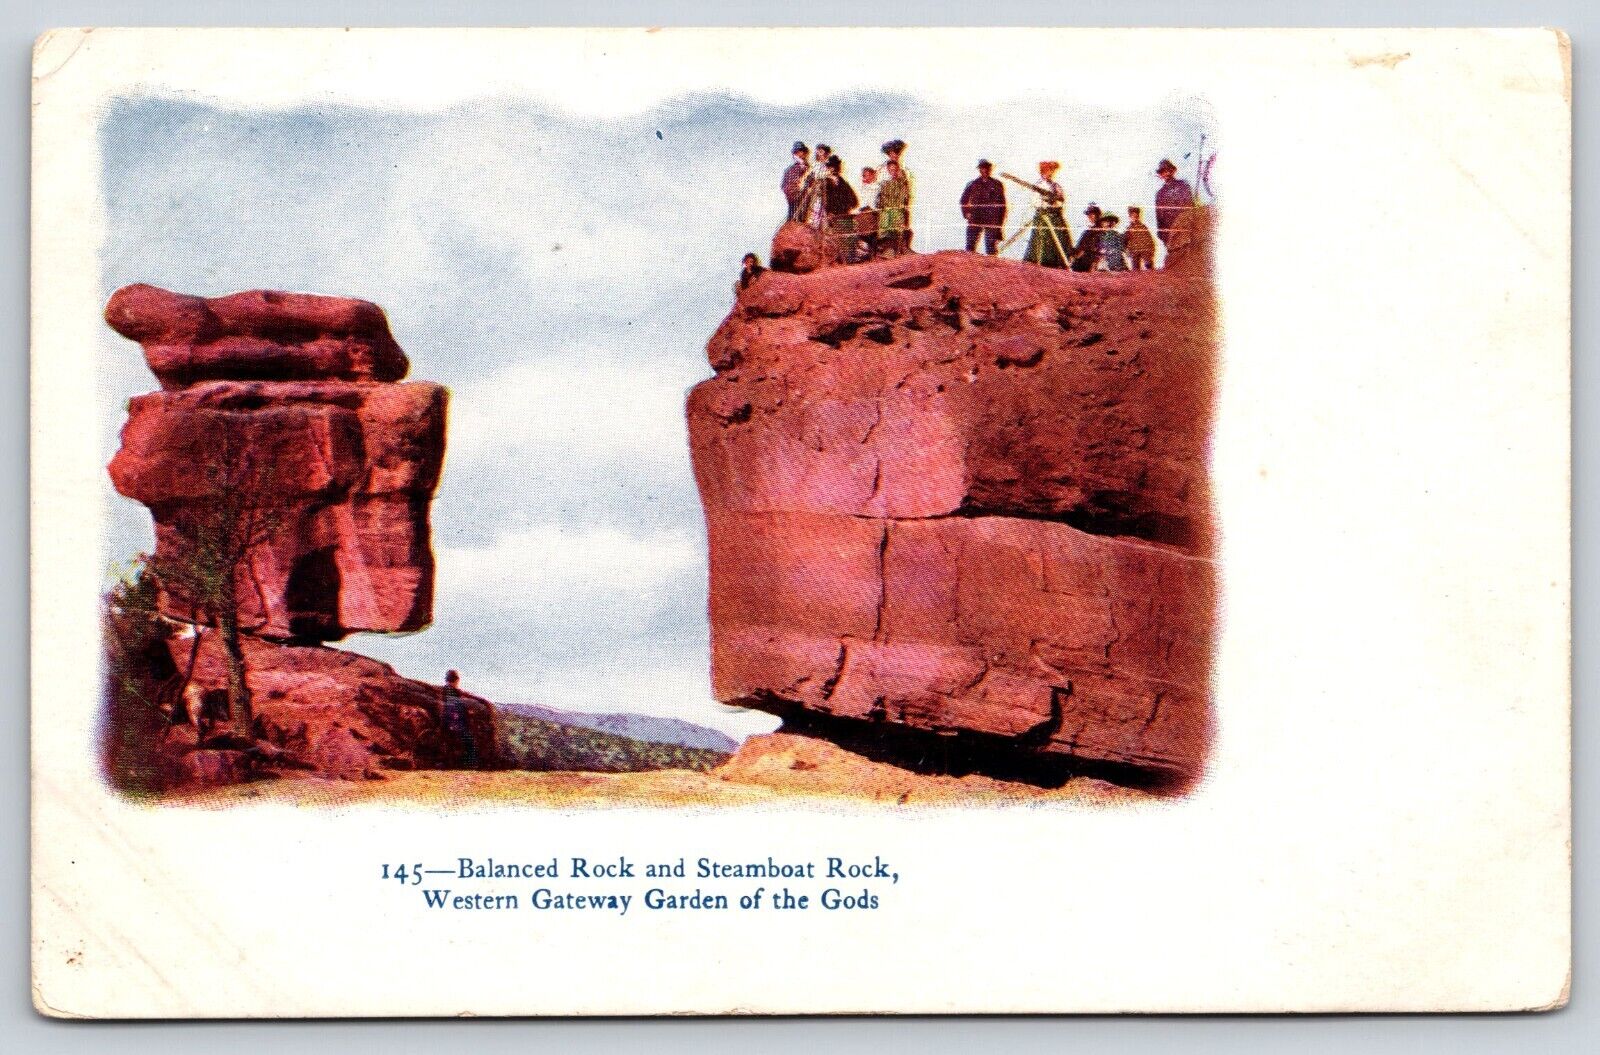 Original Old Vintage Postcard Garden Of The Gods Balanced Rock Steamboat Rock